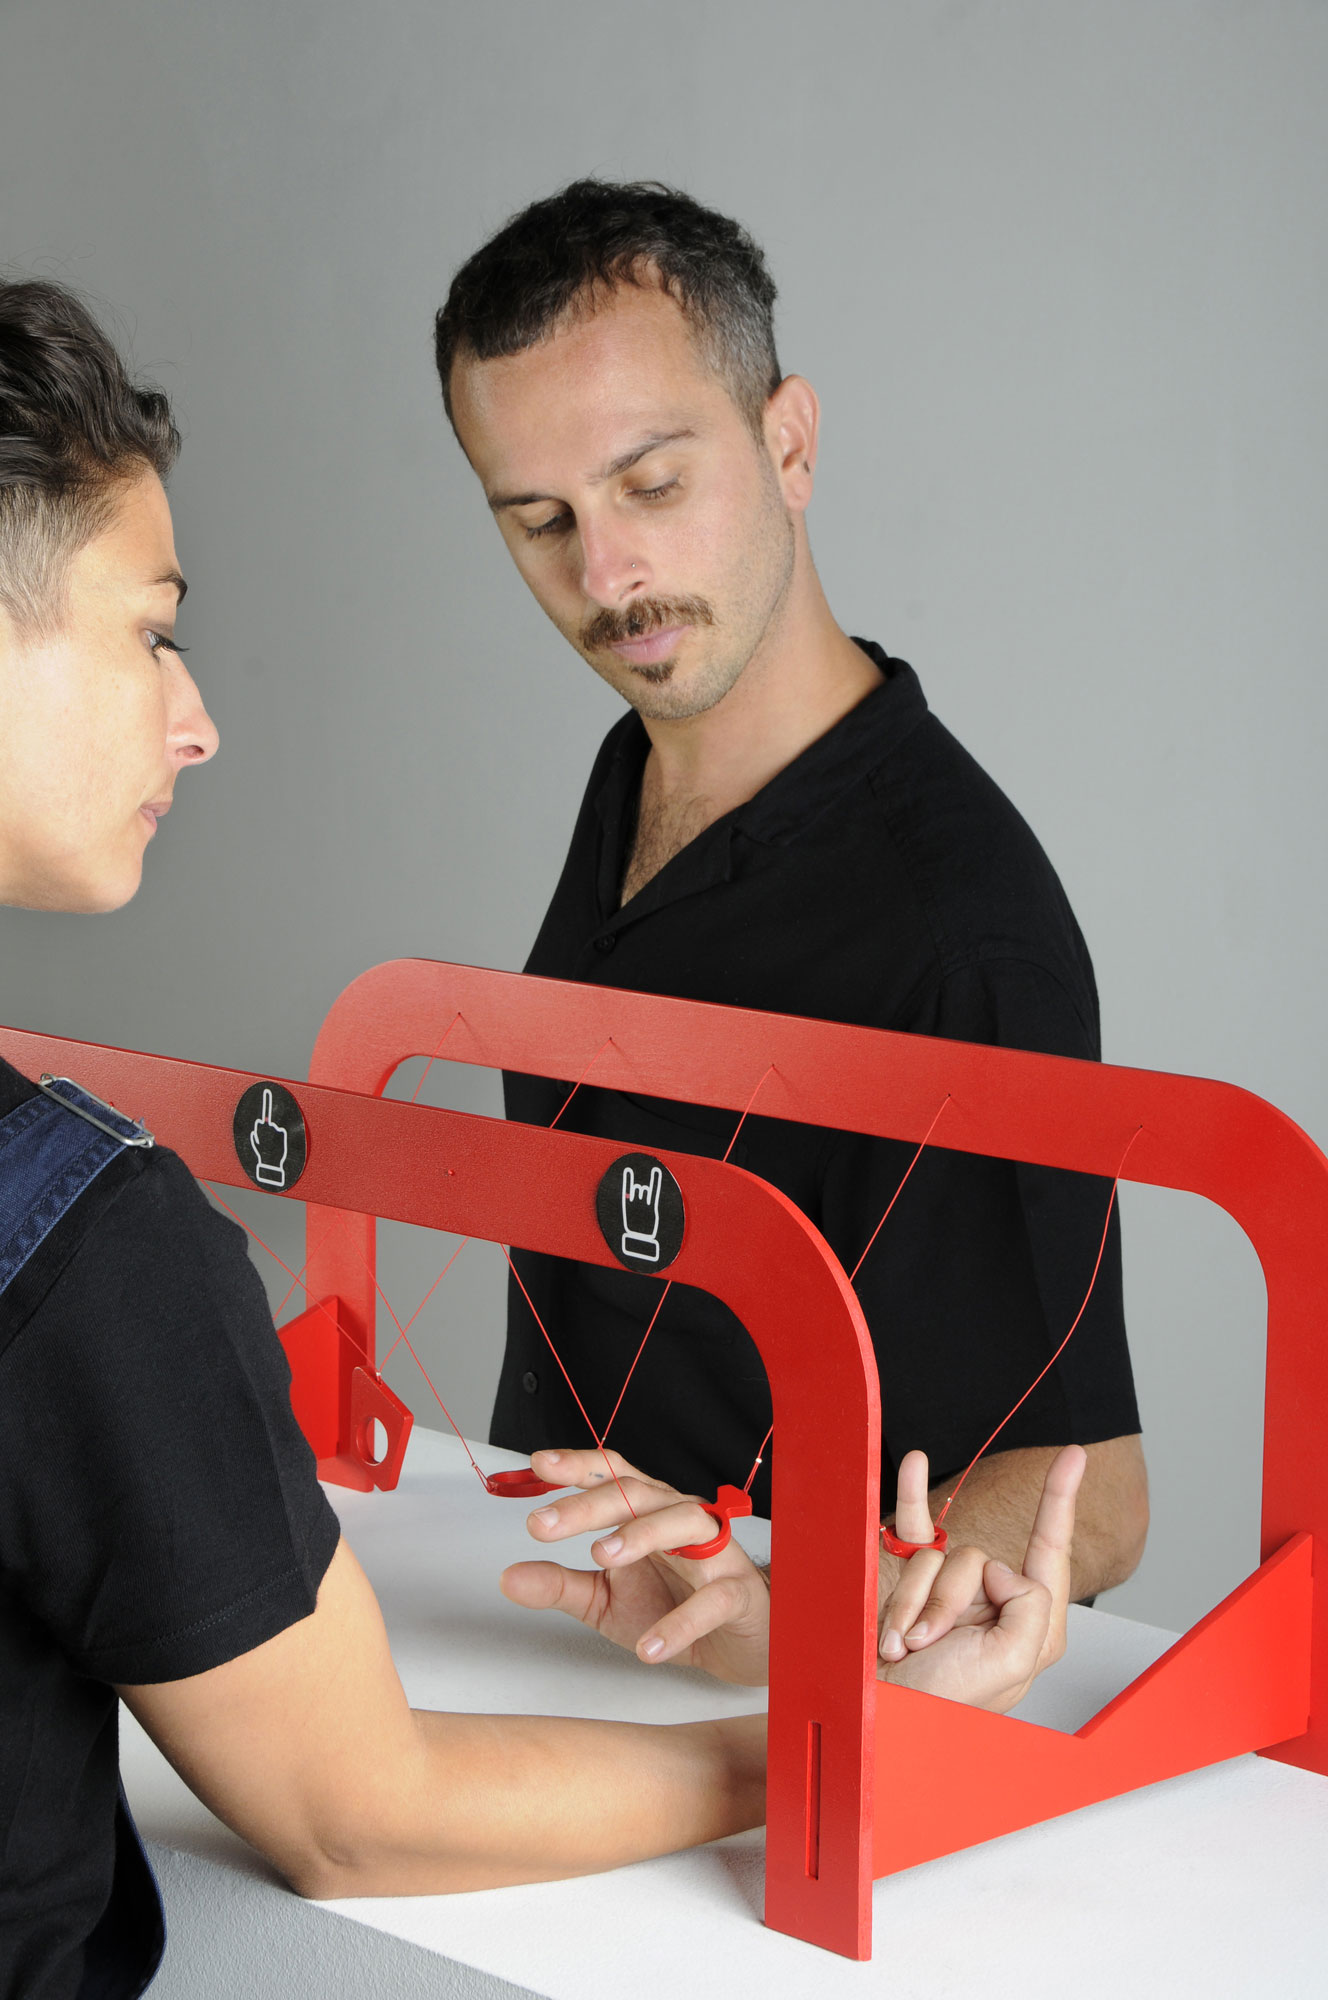 THE GAME de la collection OXYTOCIN (RED IS THE COLOR OF LOVE) en collaboration avec Alejandro Ruiz - bois, peinture, corde synthétique, petits anneaux de jonction, perles à écraser, autocollants, découpe sur bois - L.32 x l.29 x h.68 cm - 2020 - Photo : F. Kada